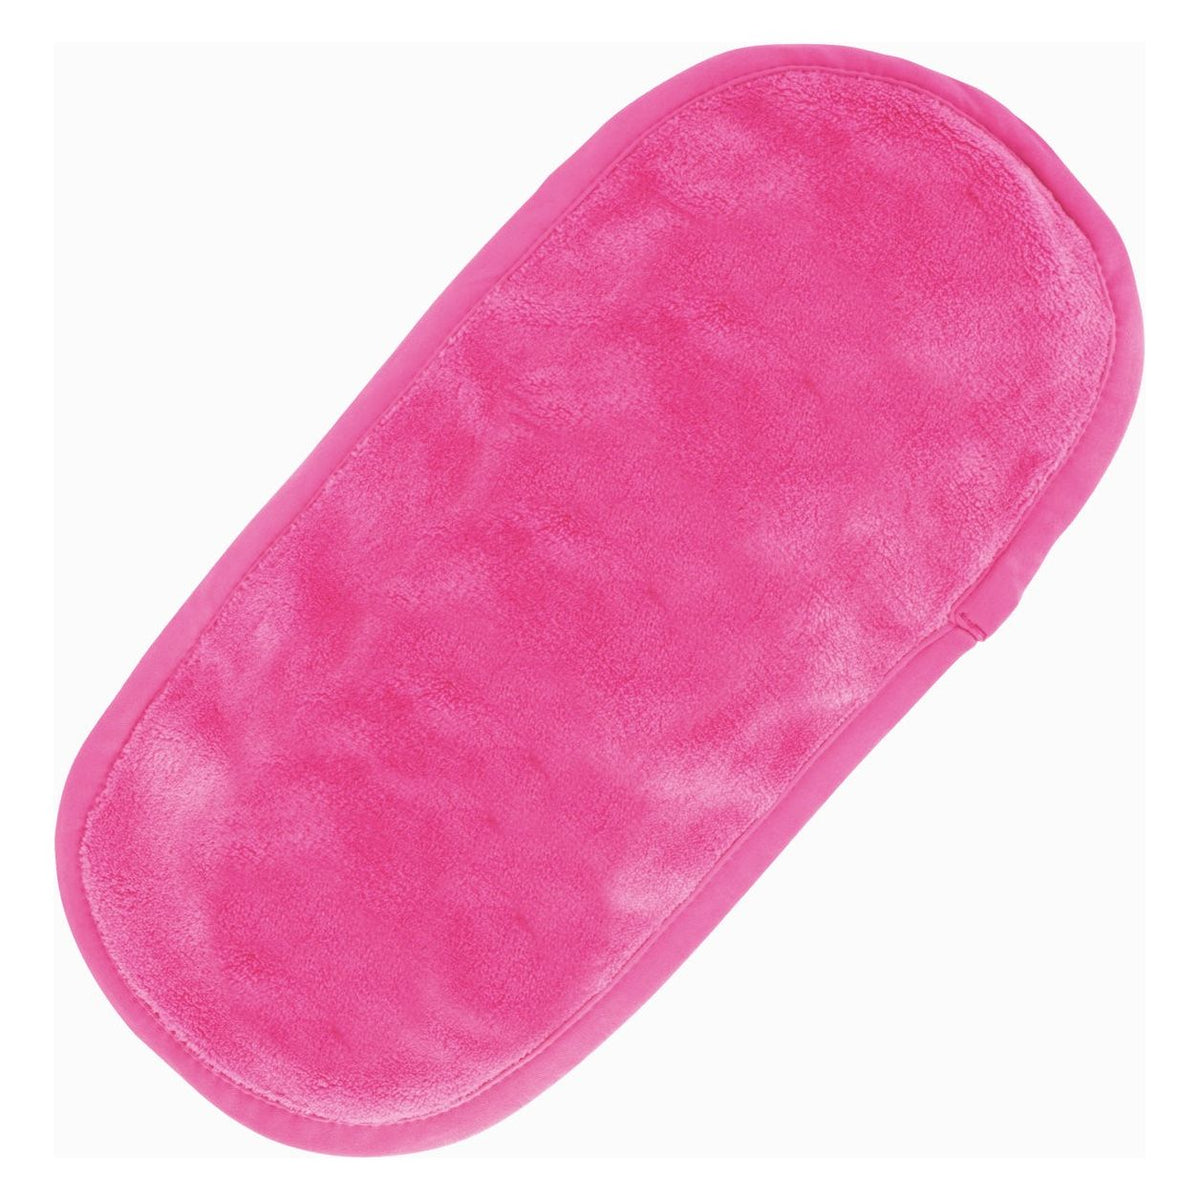 Make Up Eraser (1 Count Hot Pink)